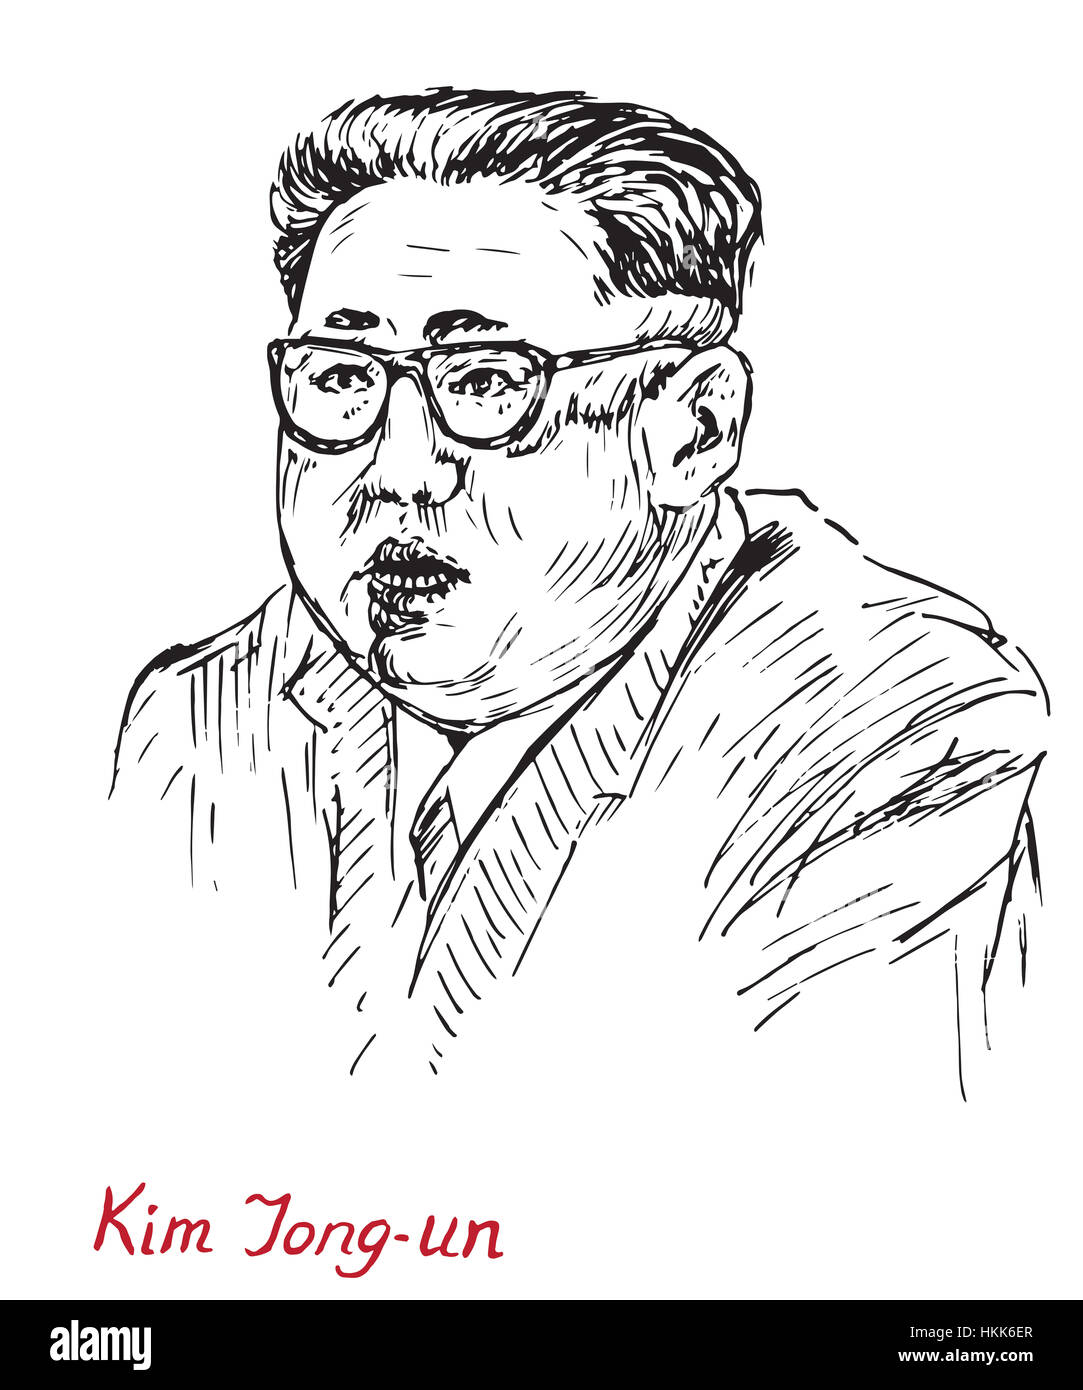 Kim Jong-un, Vorsitzender der Partei der Arbeit Koreas und oberster Führer der Demokratischen Volksrepublik Korea (DVRK), Nordkorea Stockfoto